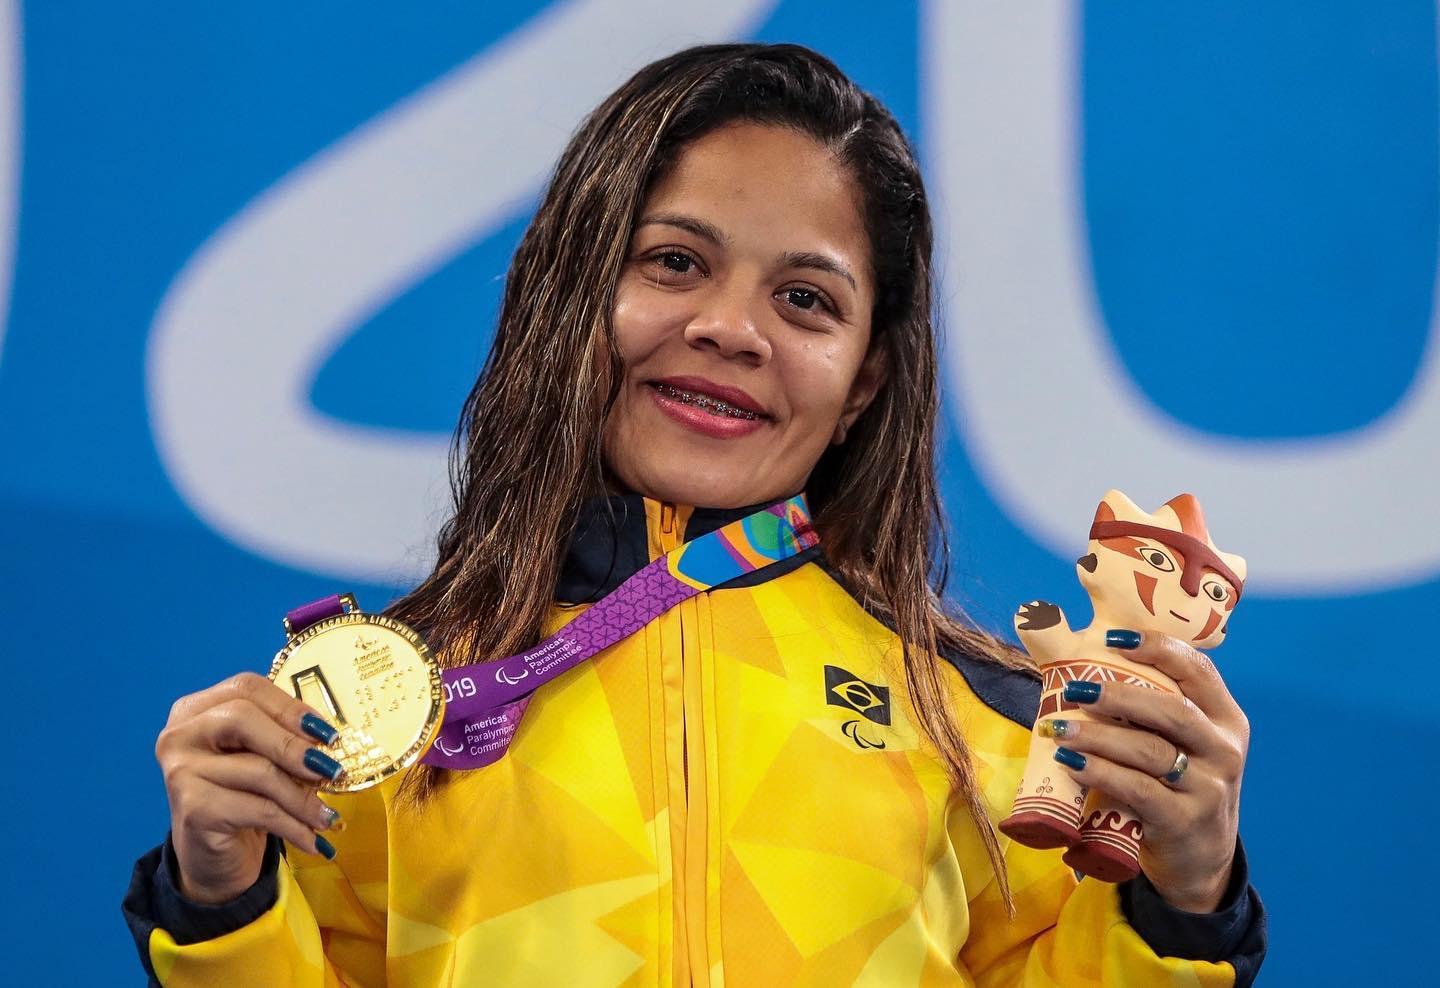 Morre a nadadora Joana Neves, multimedalhista paralímpica, aos 37 anos